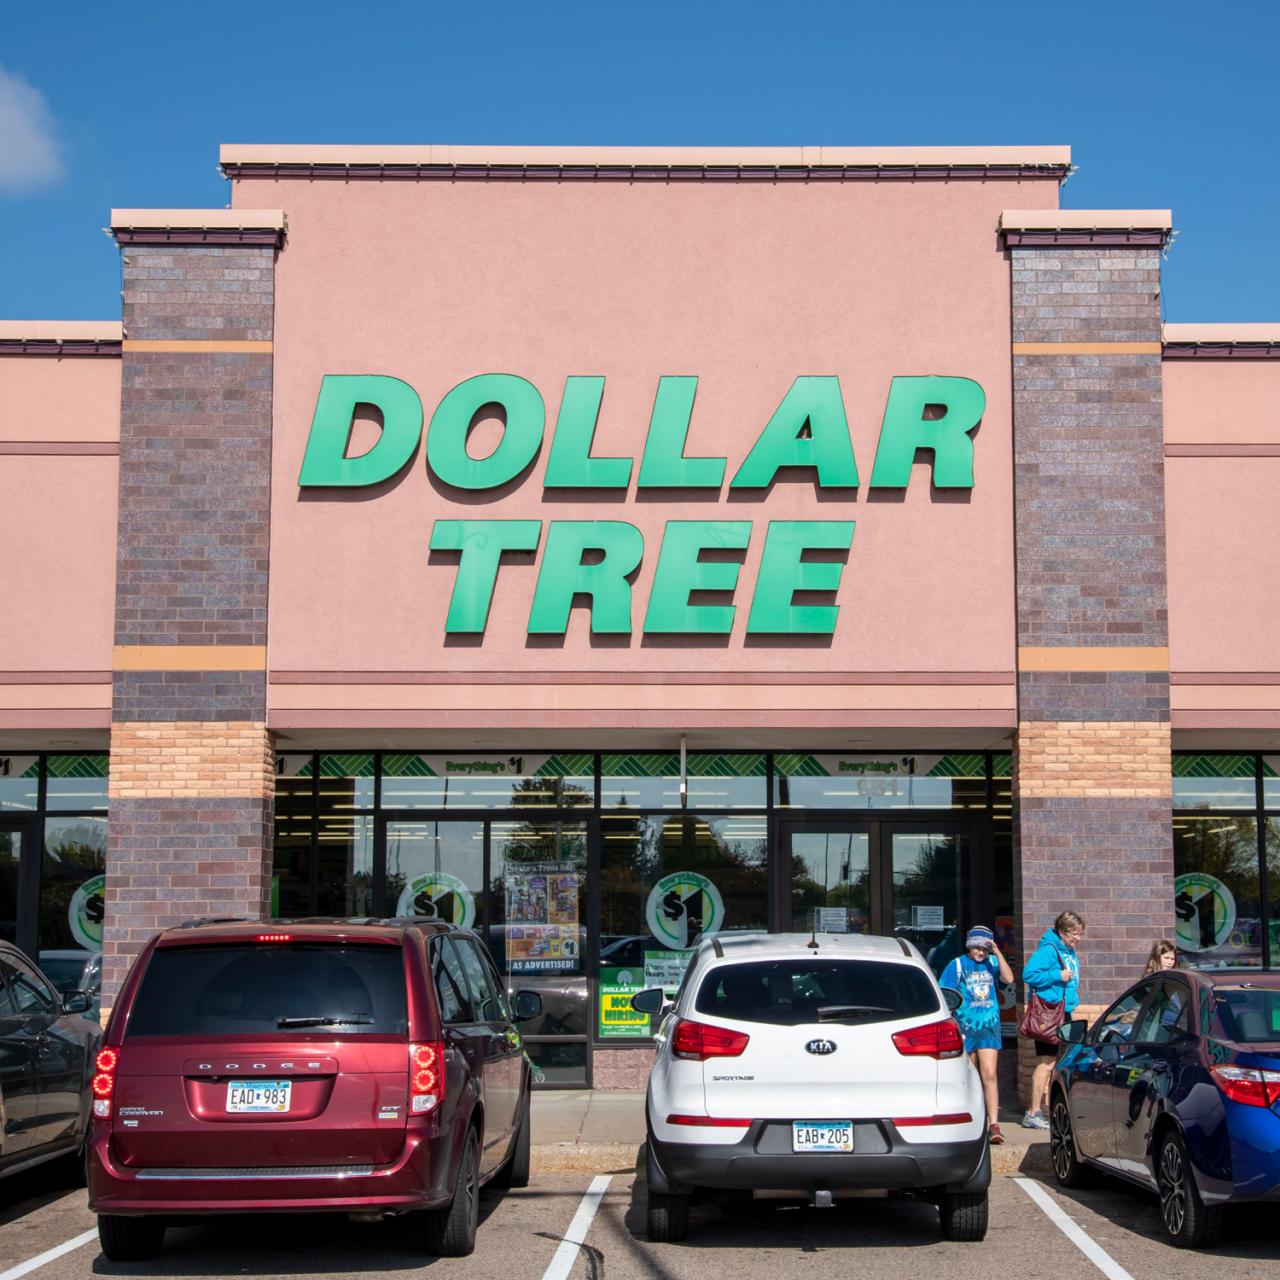 Dollar General vs Dollar Tree?